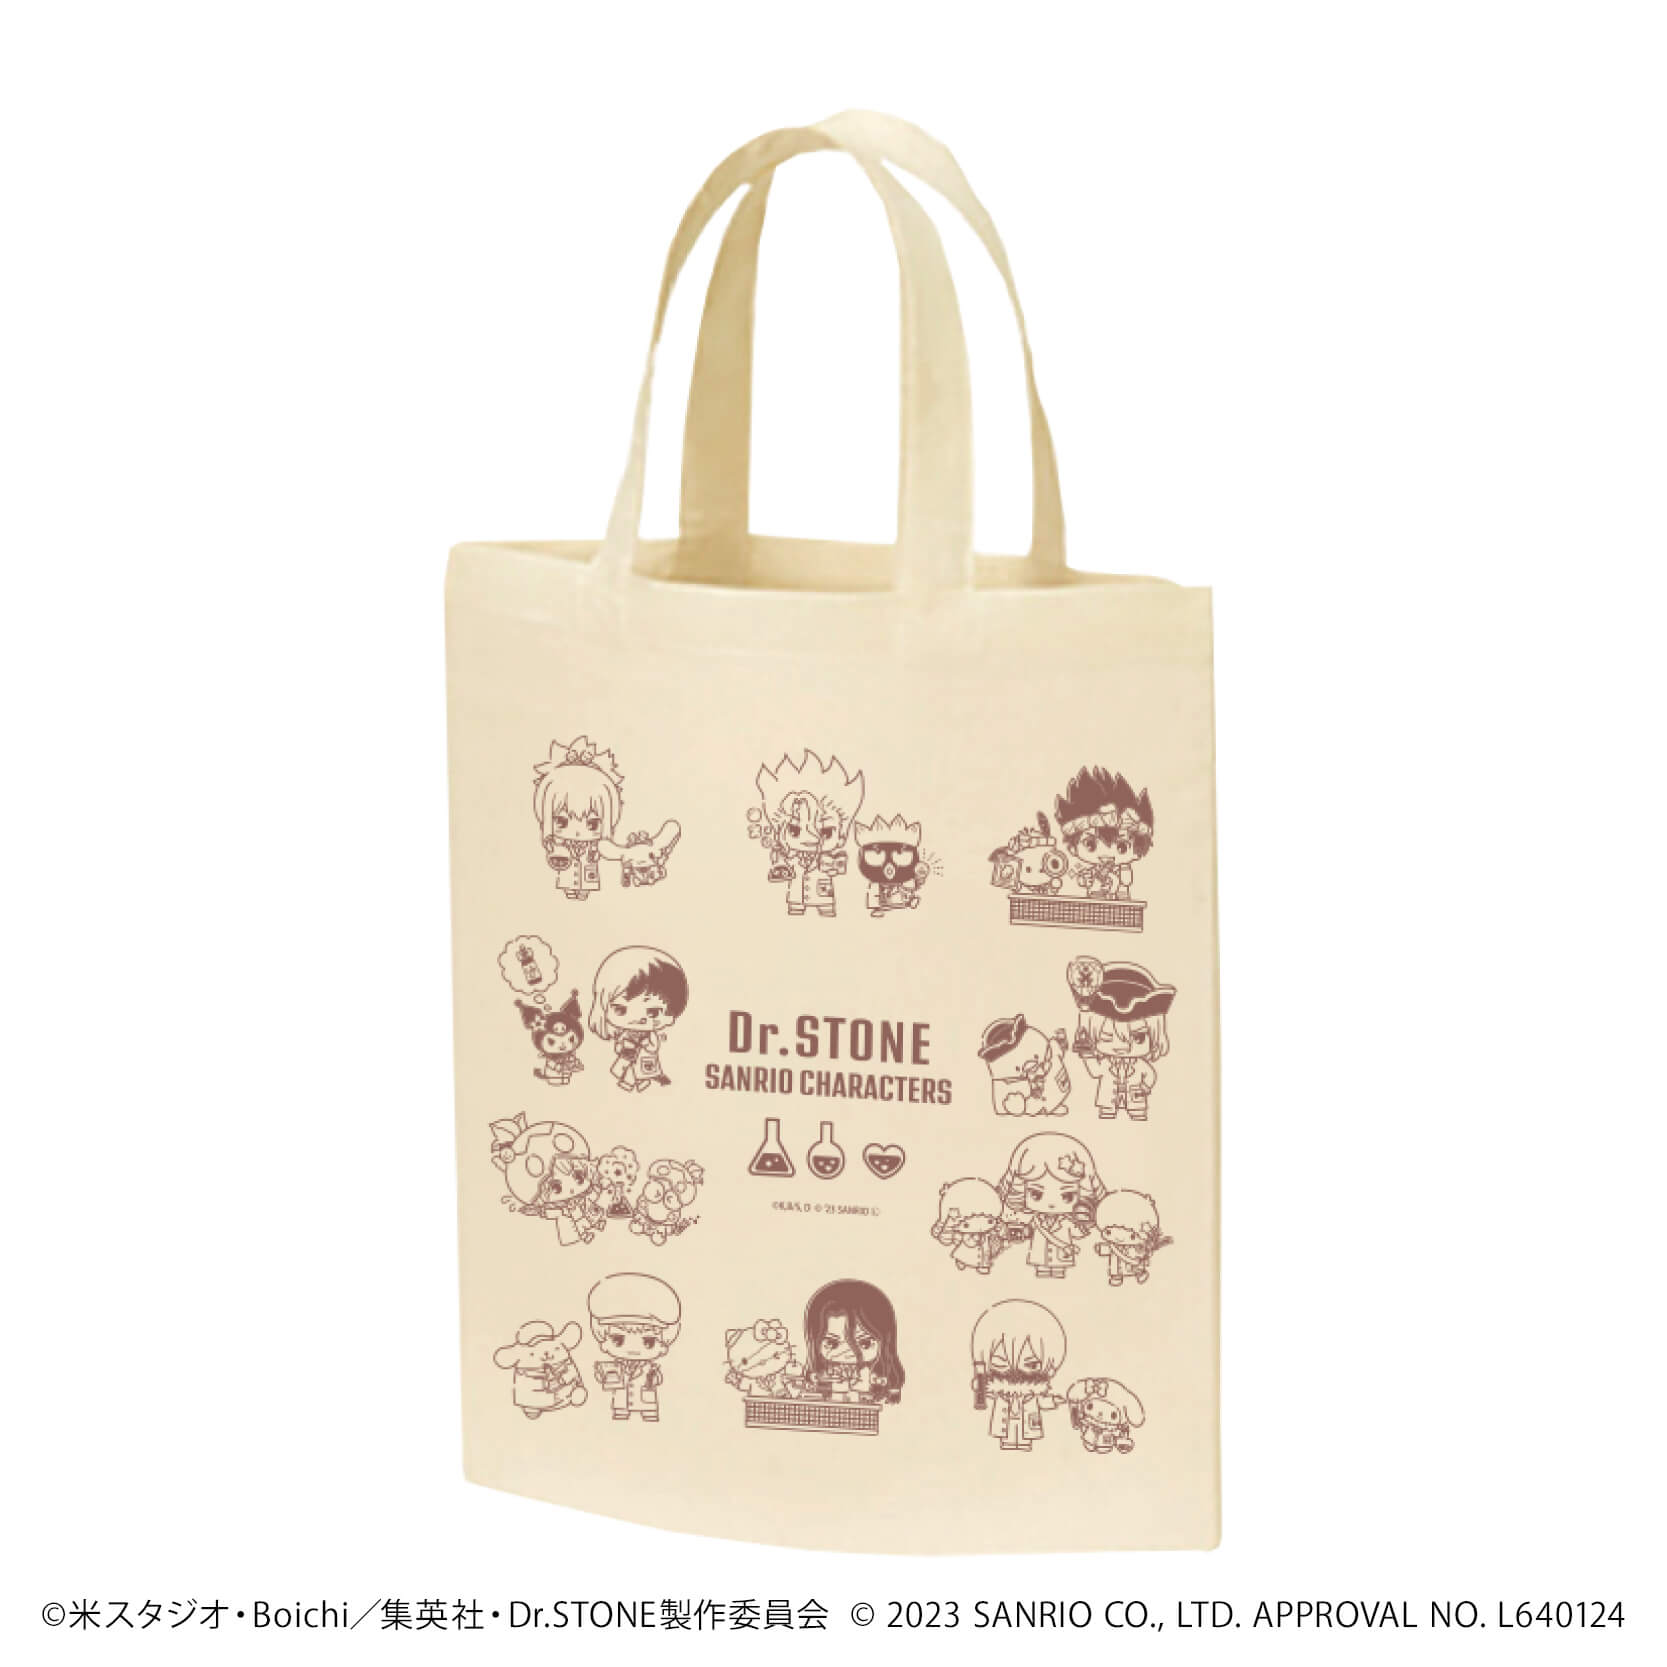 キャラトートバッグ「Dr.STONE×サンリオキャラクターズ」01/集合デザイン(ミニキャライラスト)